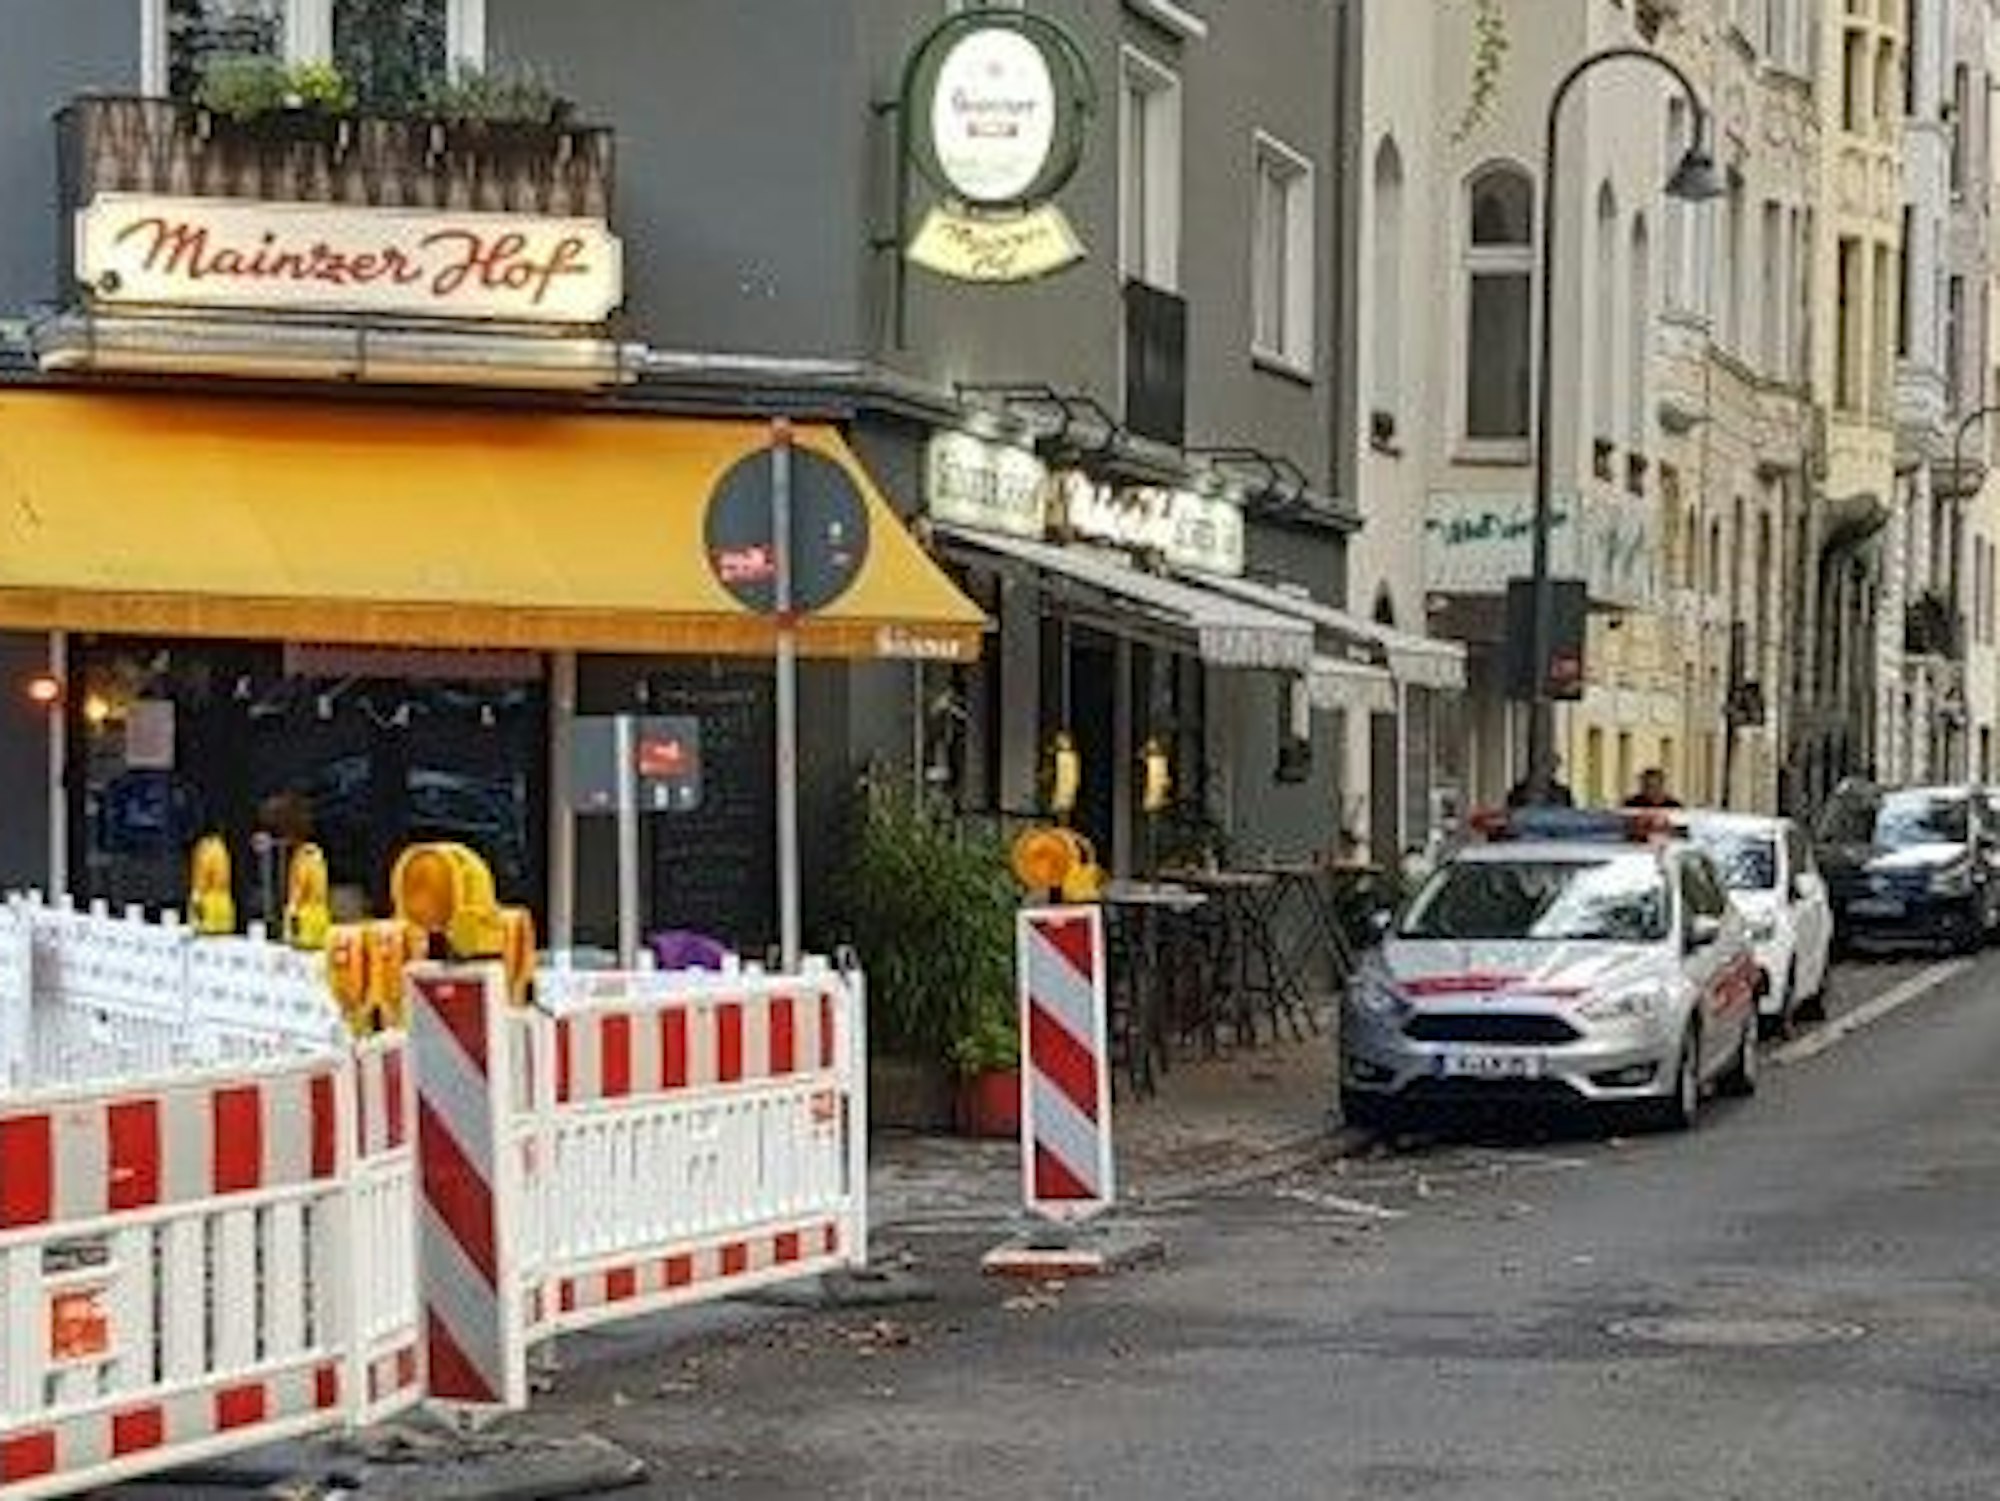 Einsatz des Ordnungsamts auf der Mainzer Straße in der Kölner Südstadt.